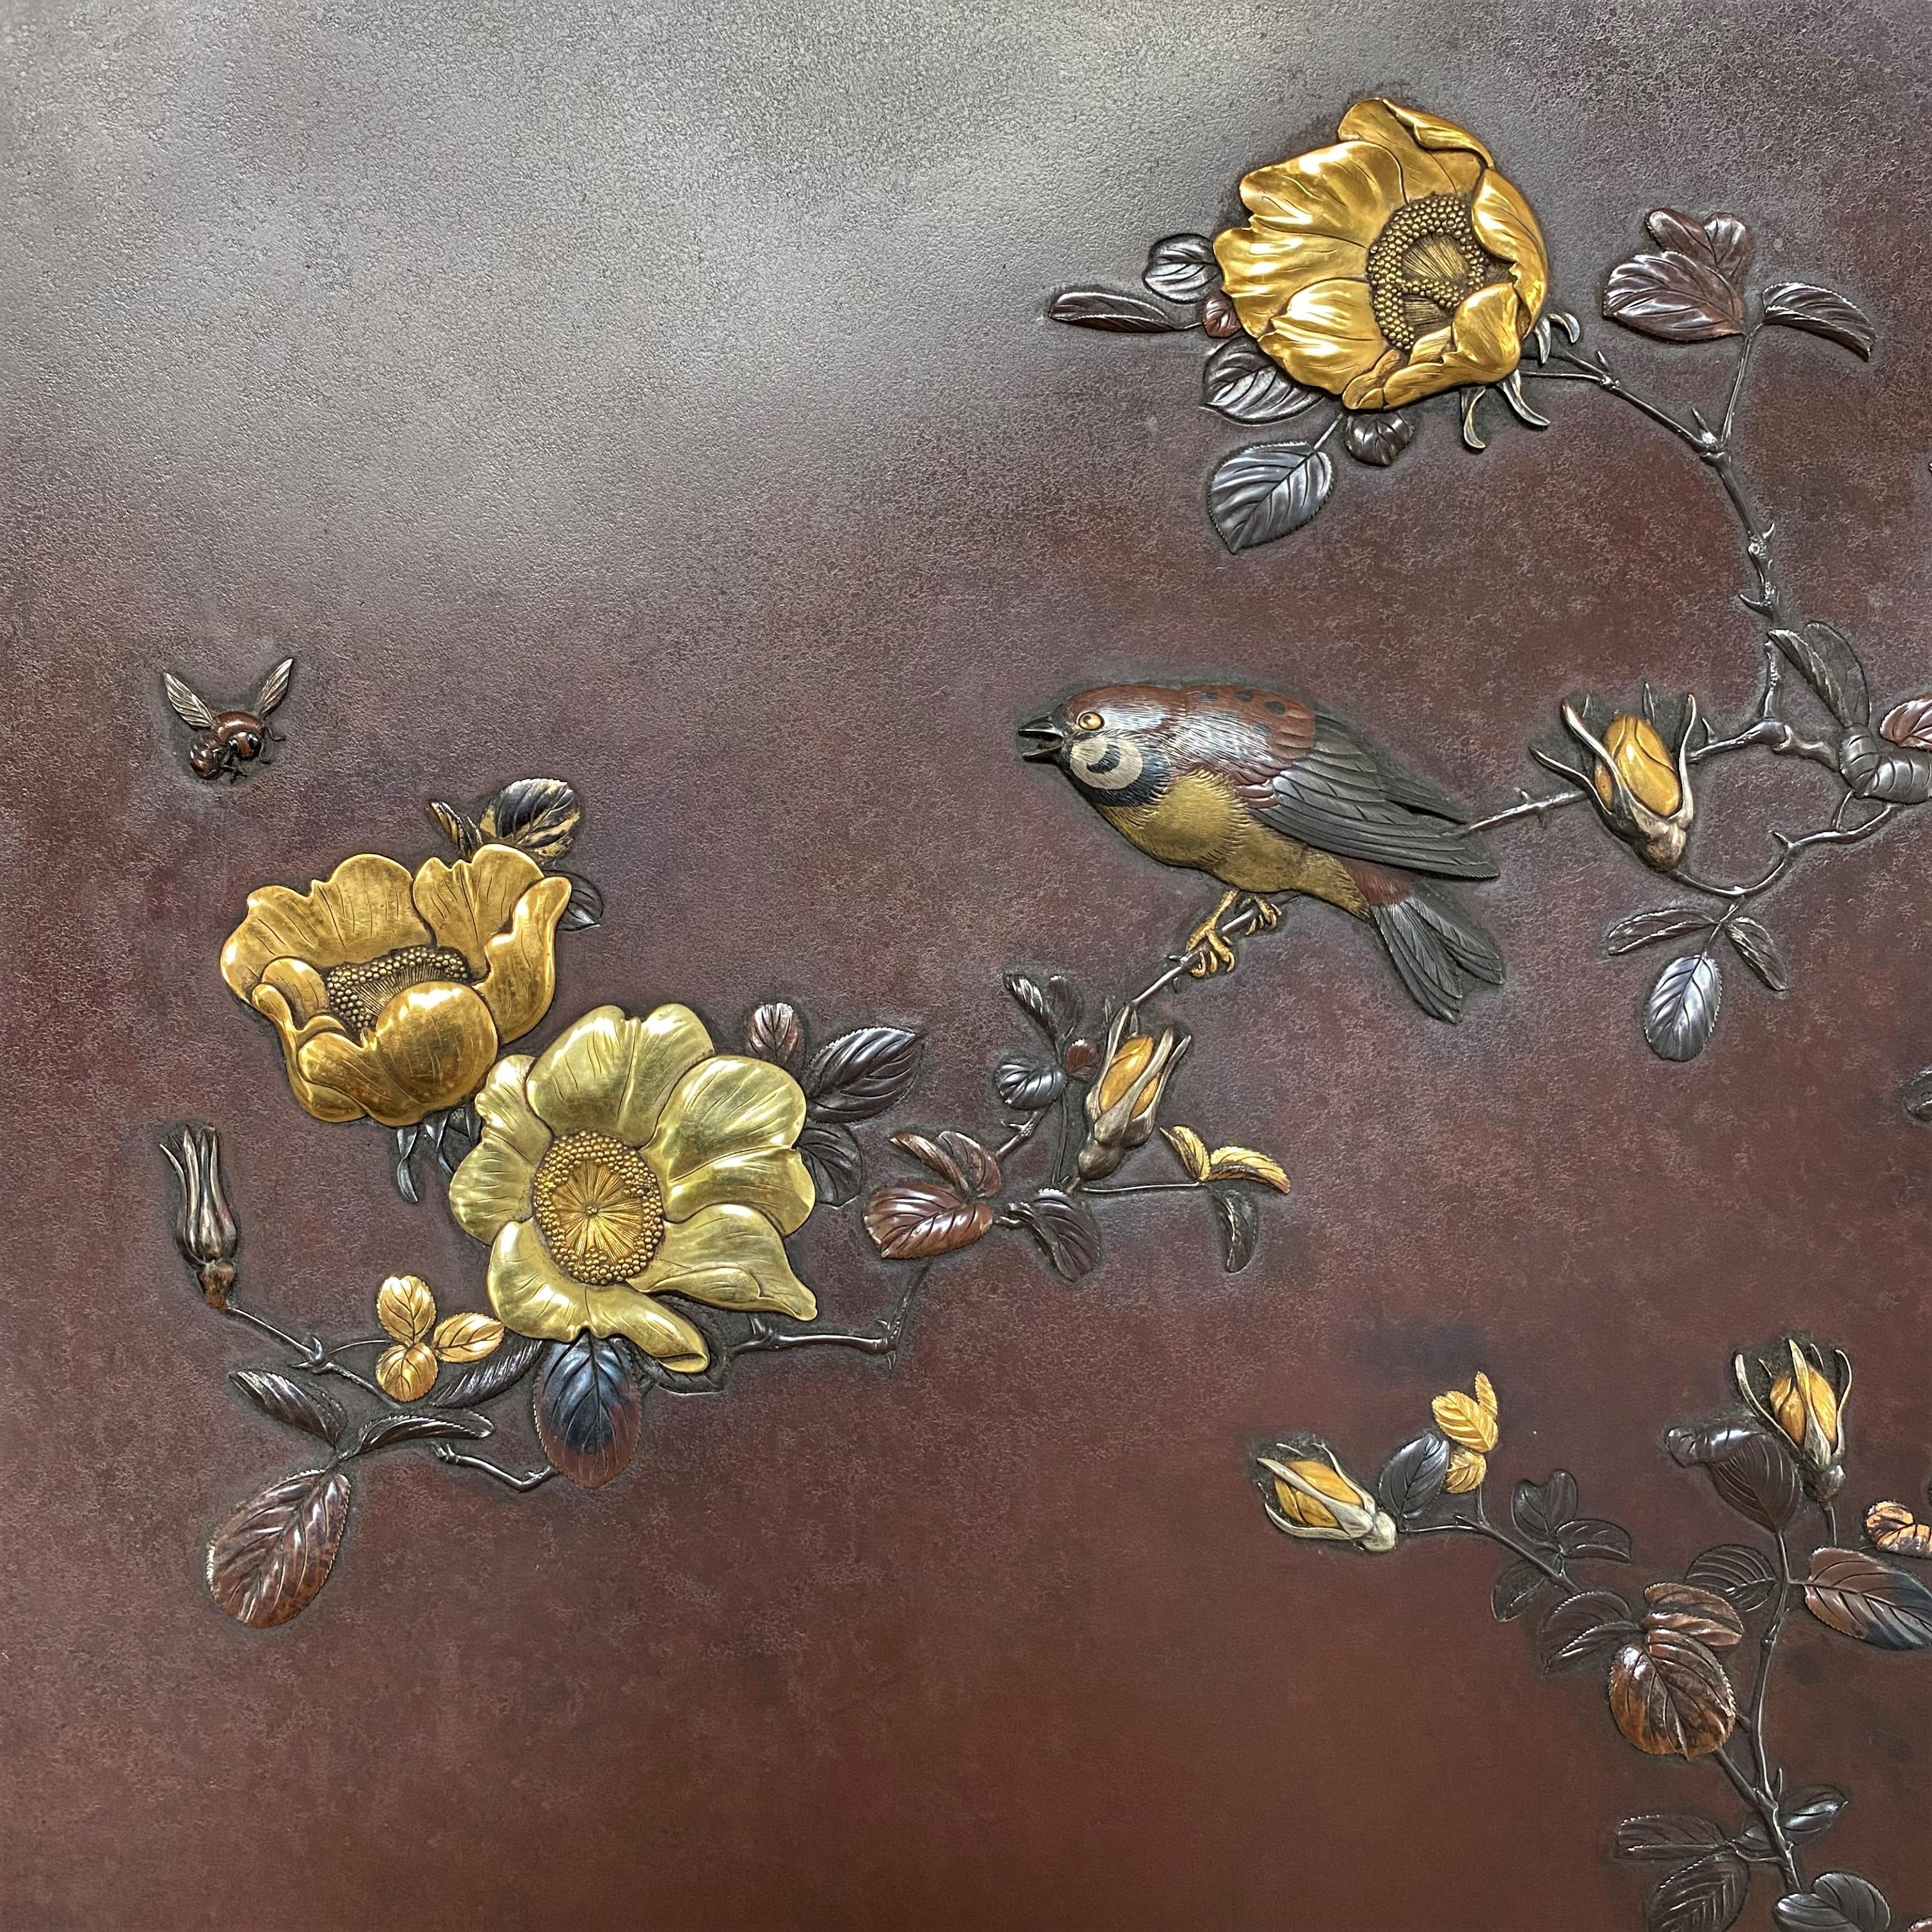 Eine schöne, große (49 cm Durchmesser) Bronzeschale aus dem späten 19. Jahrhundert in Japan mit eingelegtem und aufgesetztem Edelmetalldekor.

Der Hauptteil der Schale mit reicher roter Patinierung und bündig eingelegtem Zierrand mit geometrischen